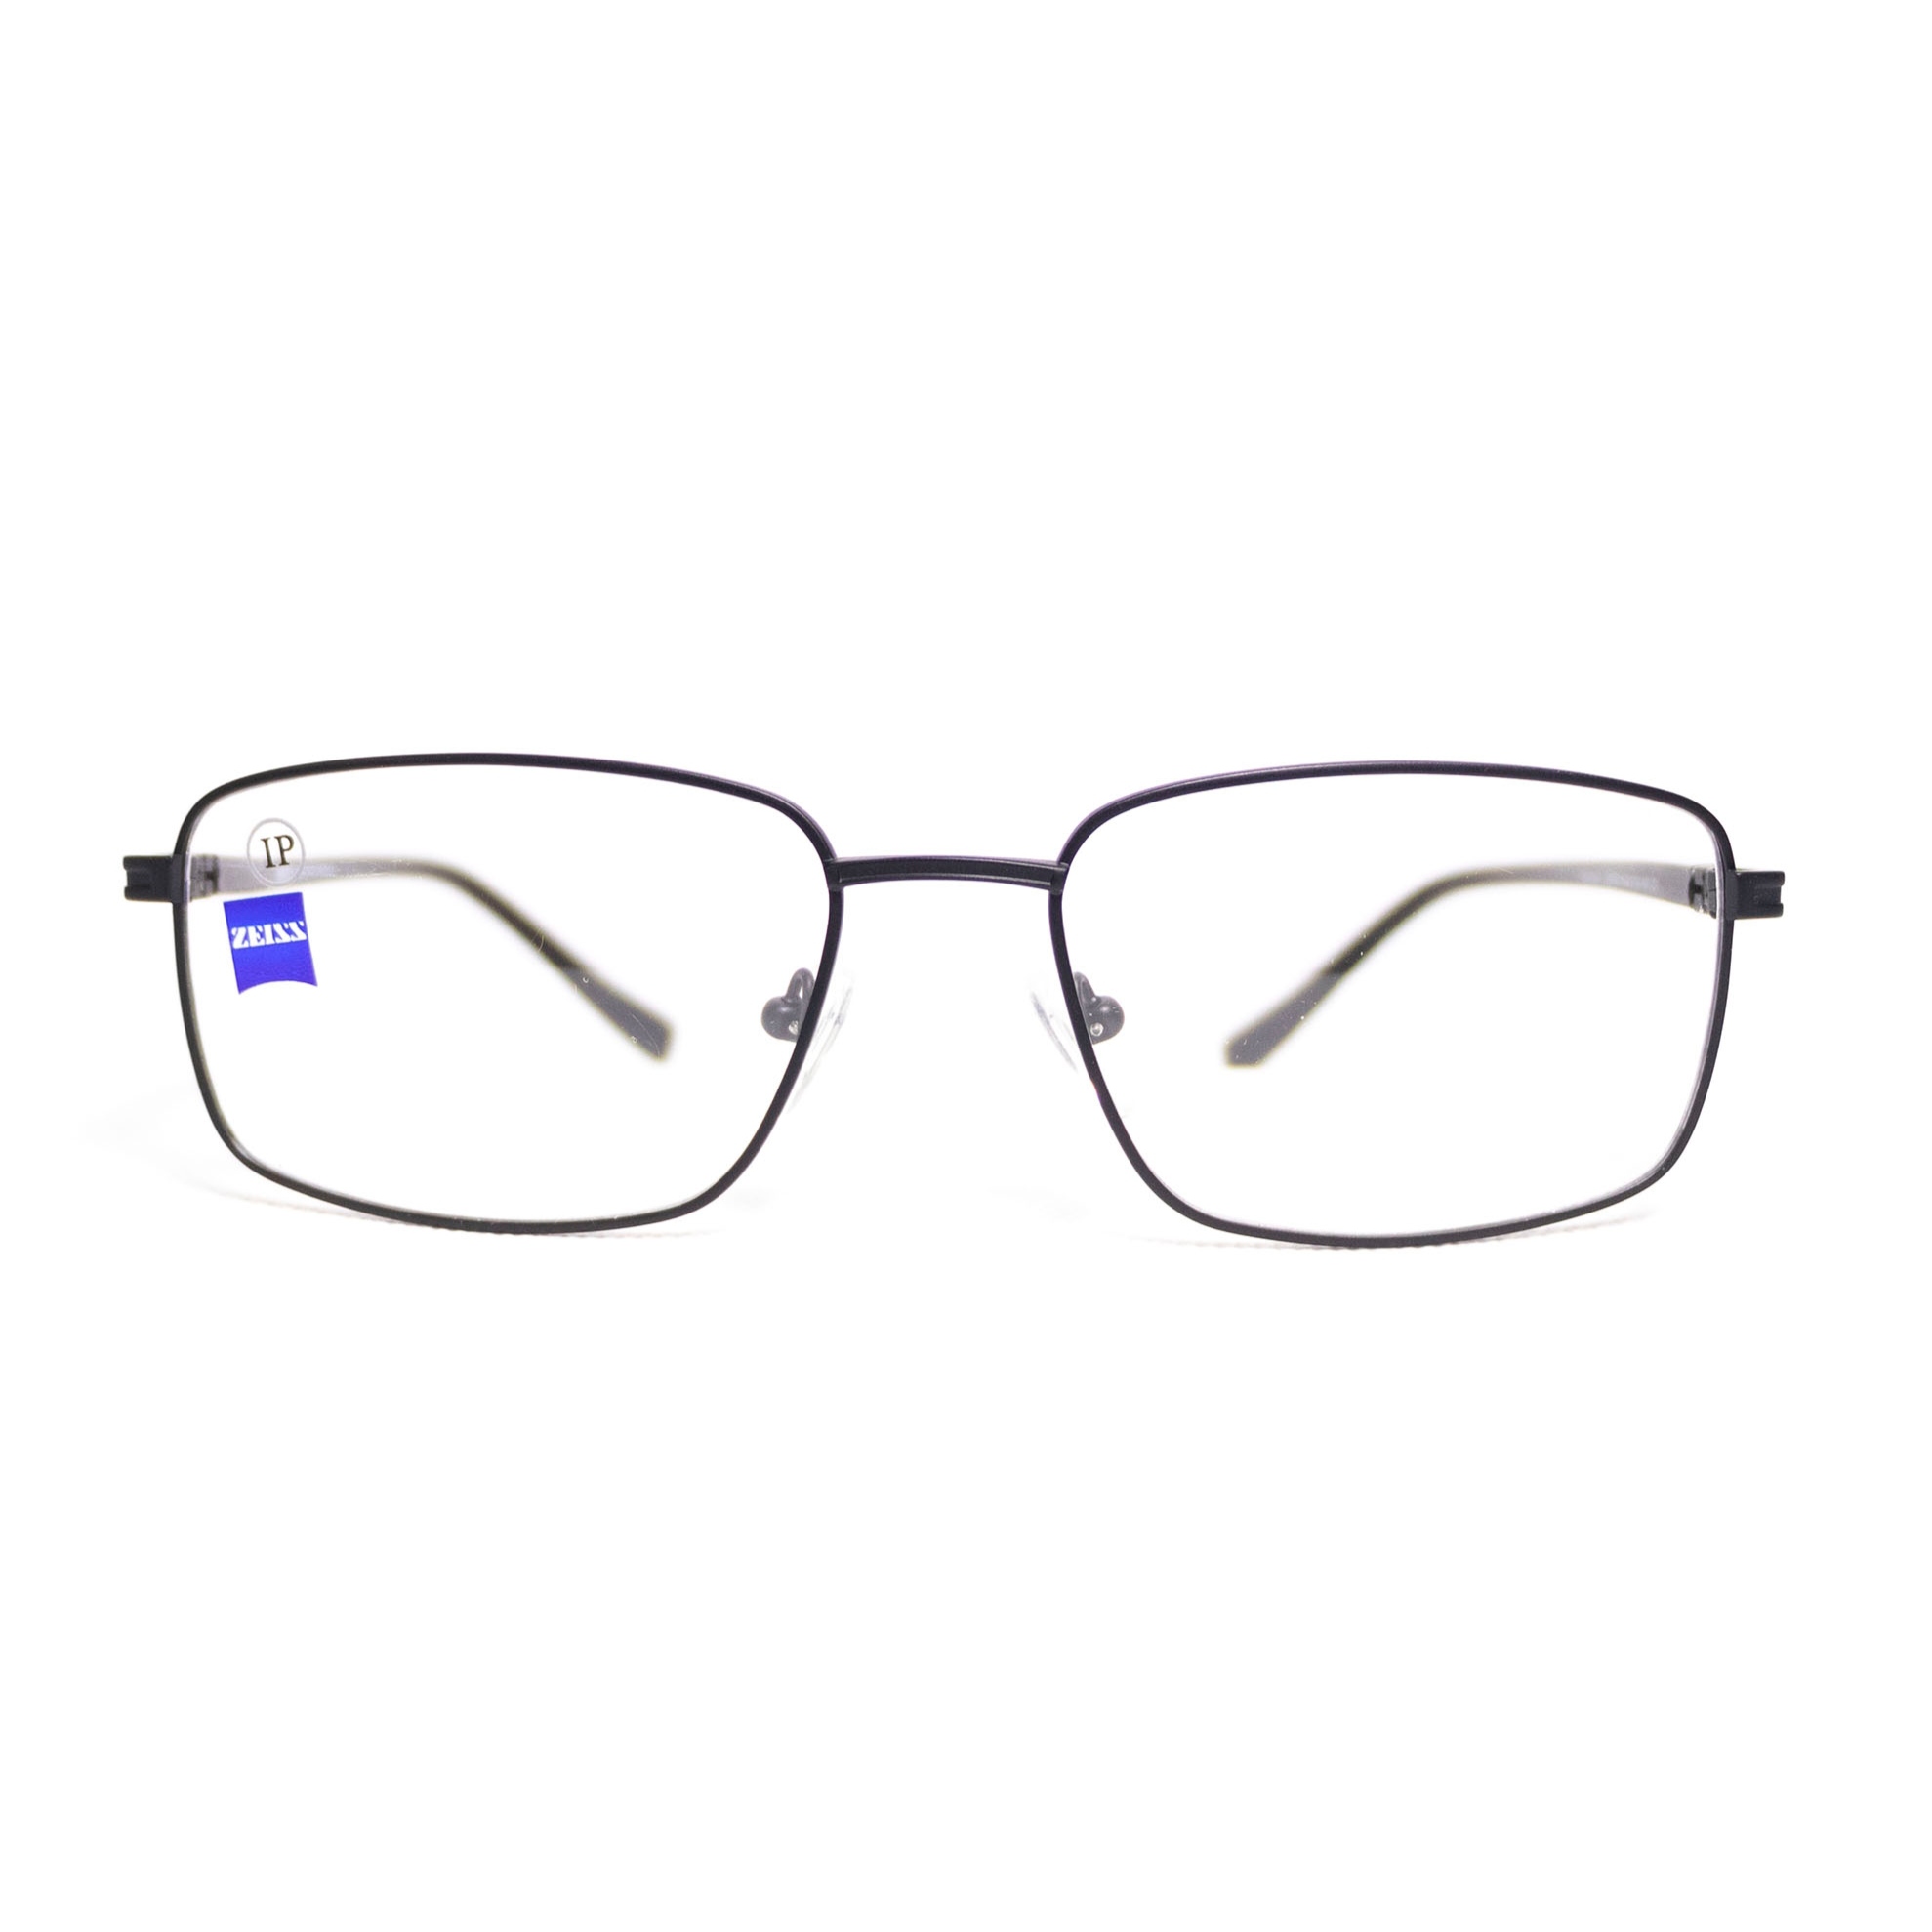 فریم عینک طبی زایس کد BT14 C1